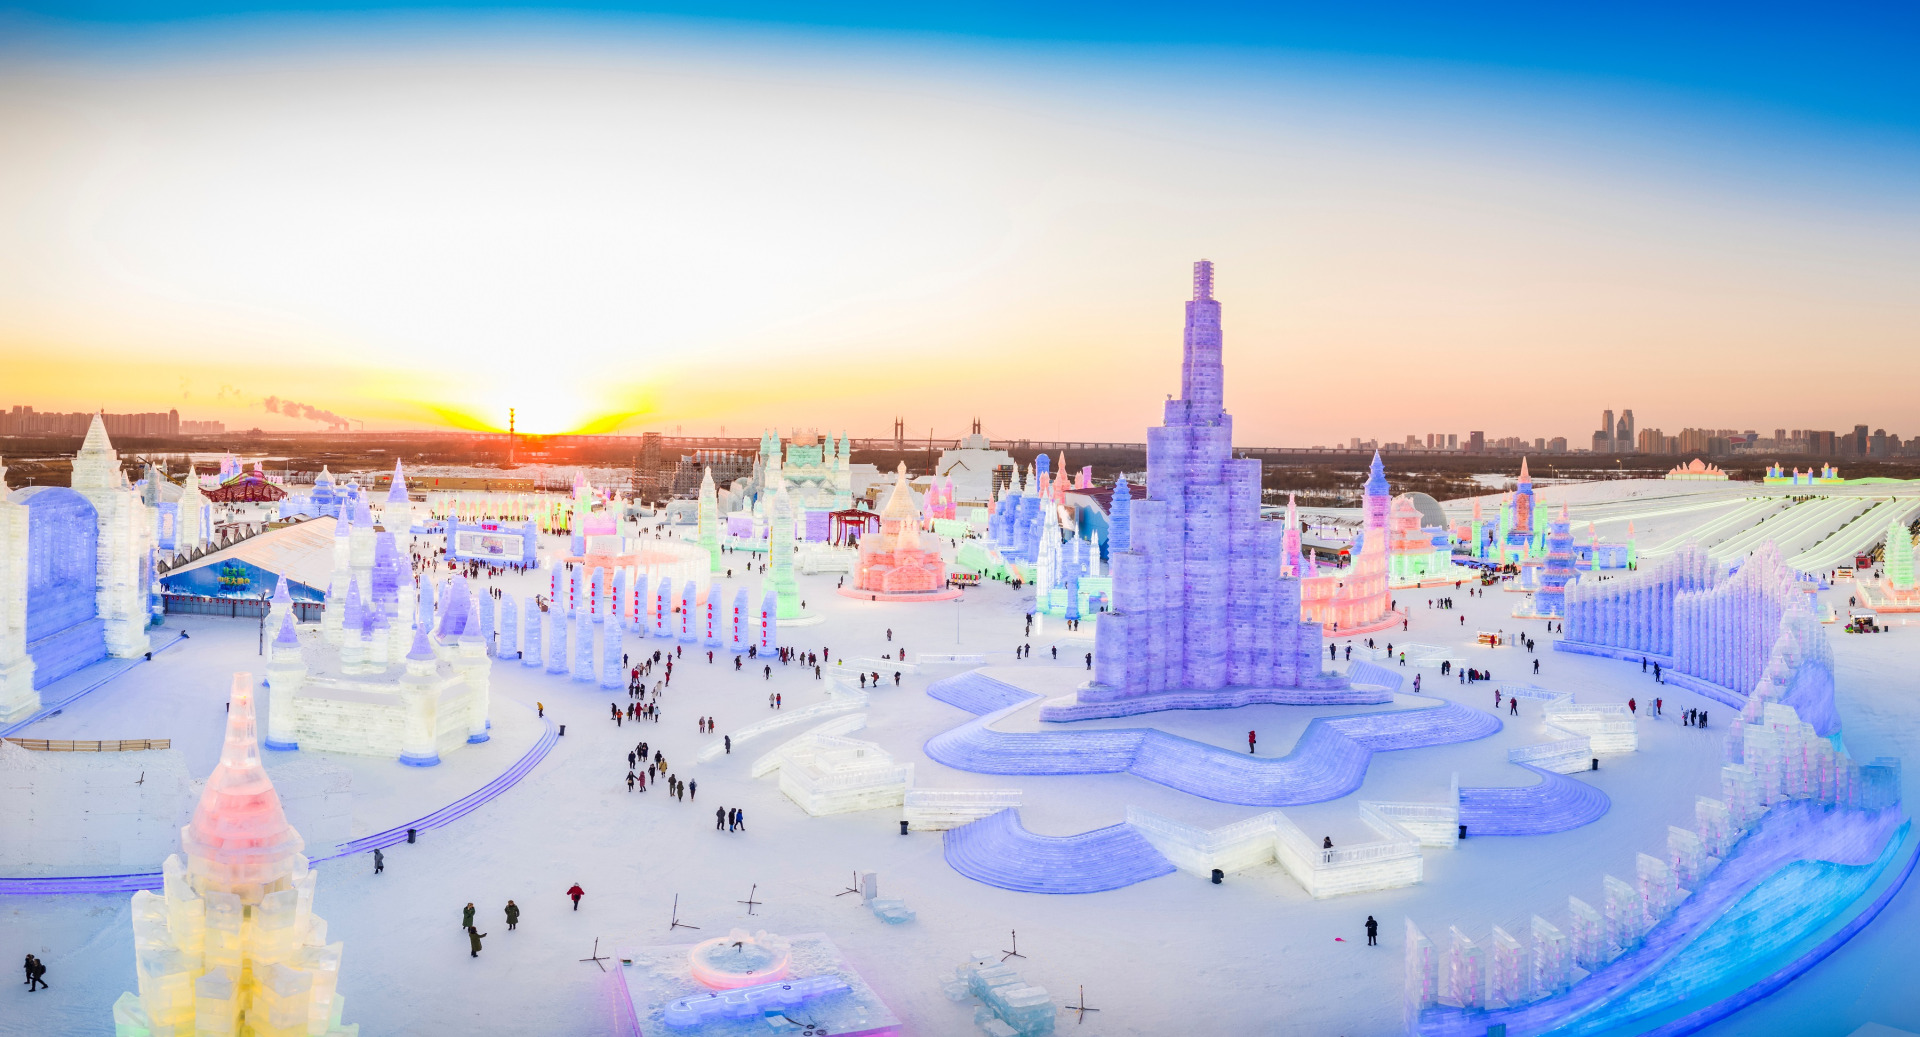 ■冰雪大世界：面积80万平方米，是一个大型综合性游乐园，集冰雪漫画，主题雪表演，冰上杂技，冰雕展等多种艺术文化活动于一体。
　